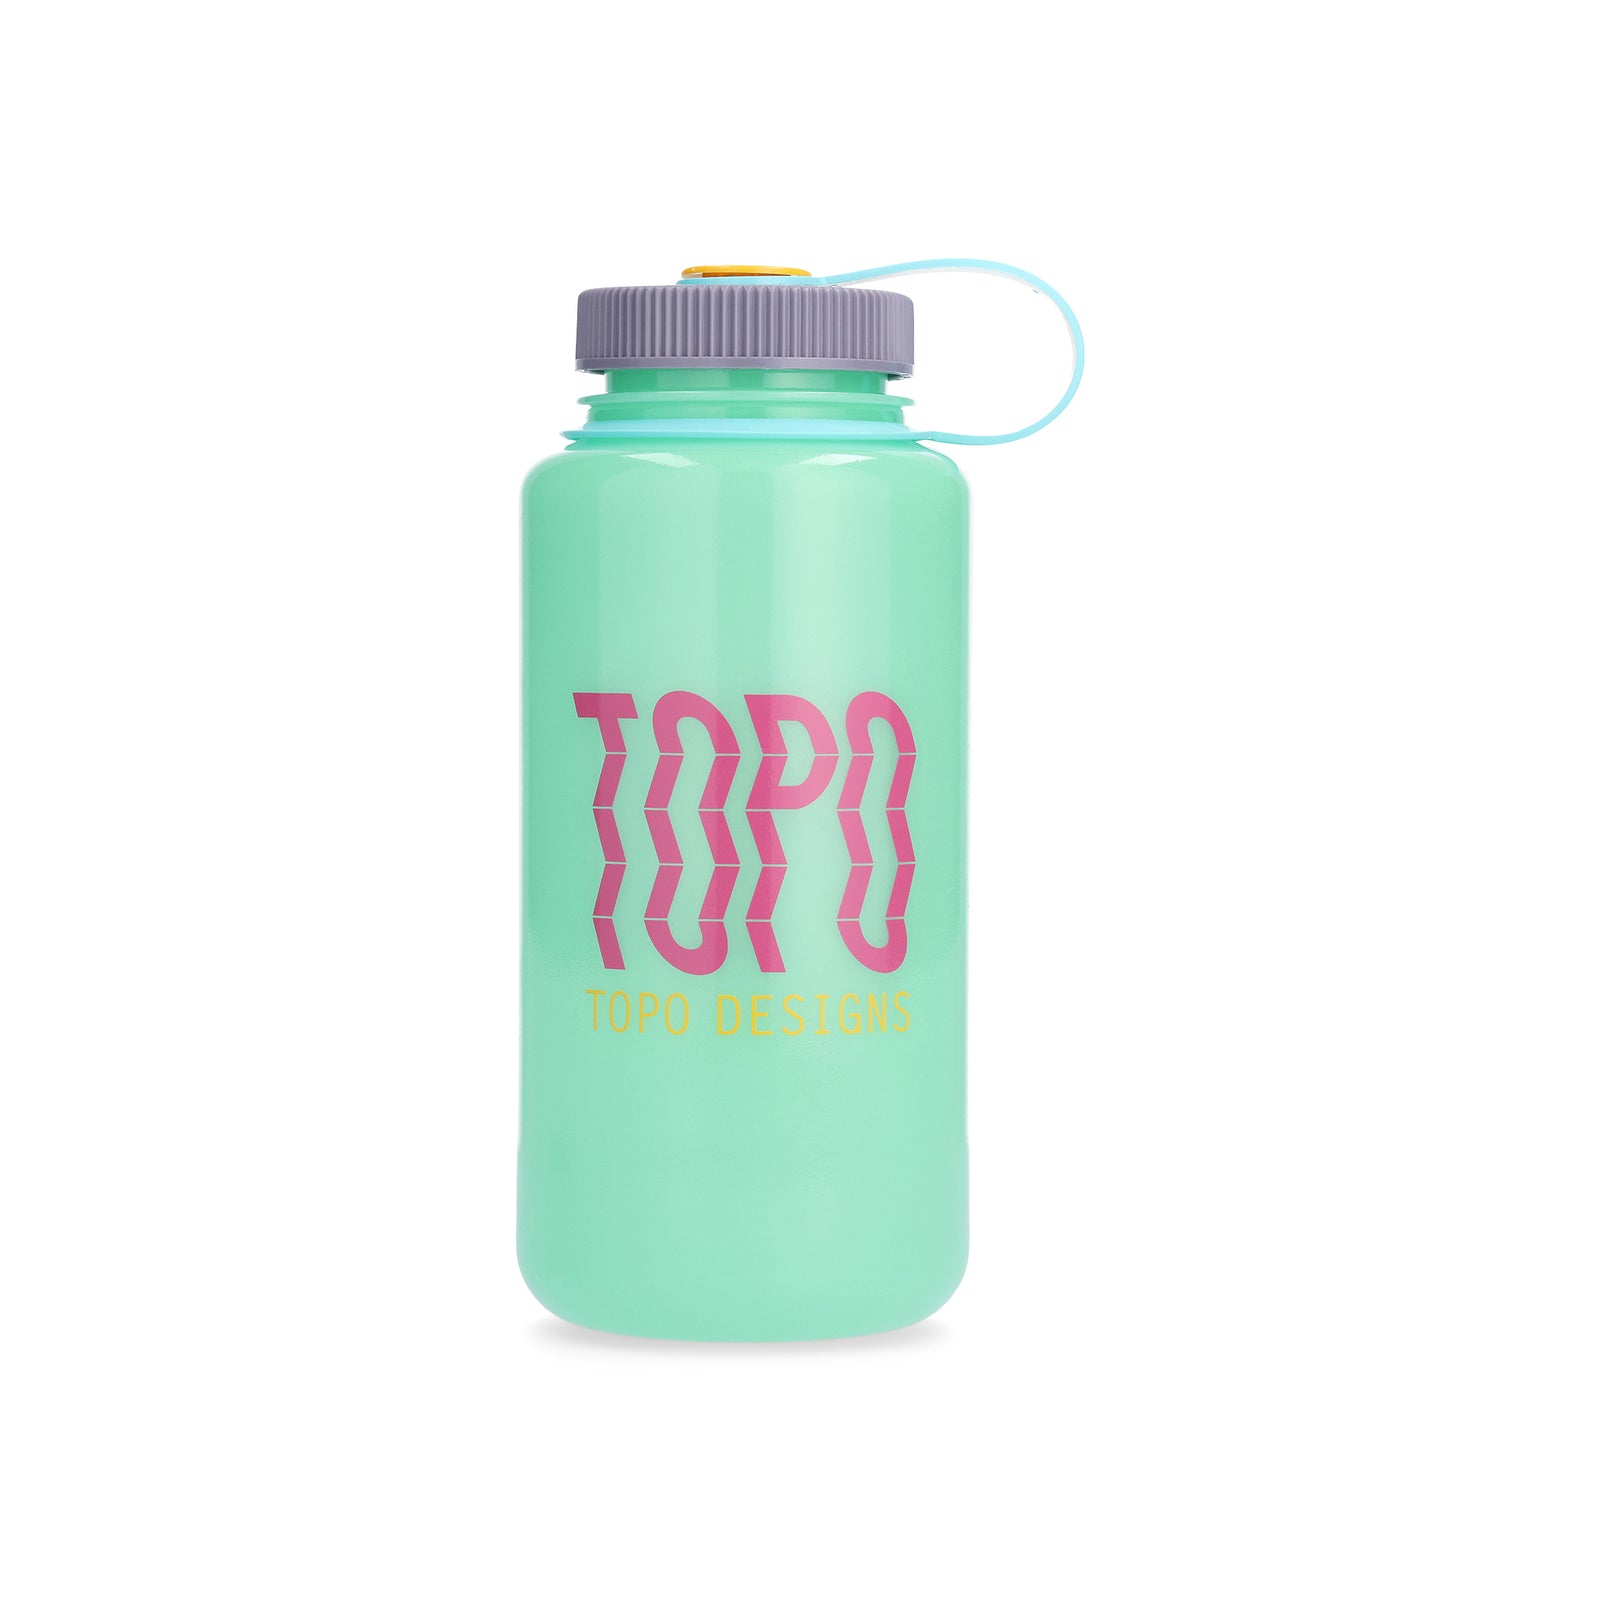 Topo Designs Nalgene 32 oz Wide Mouth Water Bottle in "Wave / Glow Green"